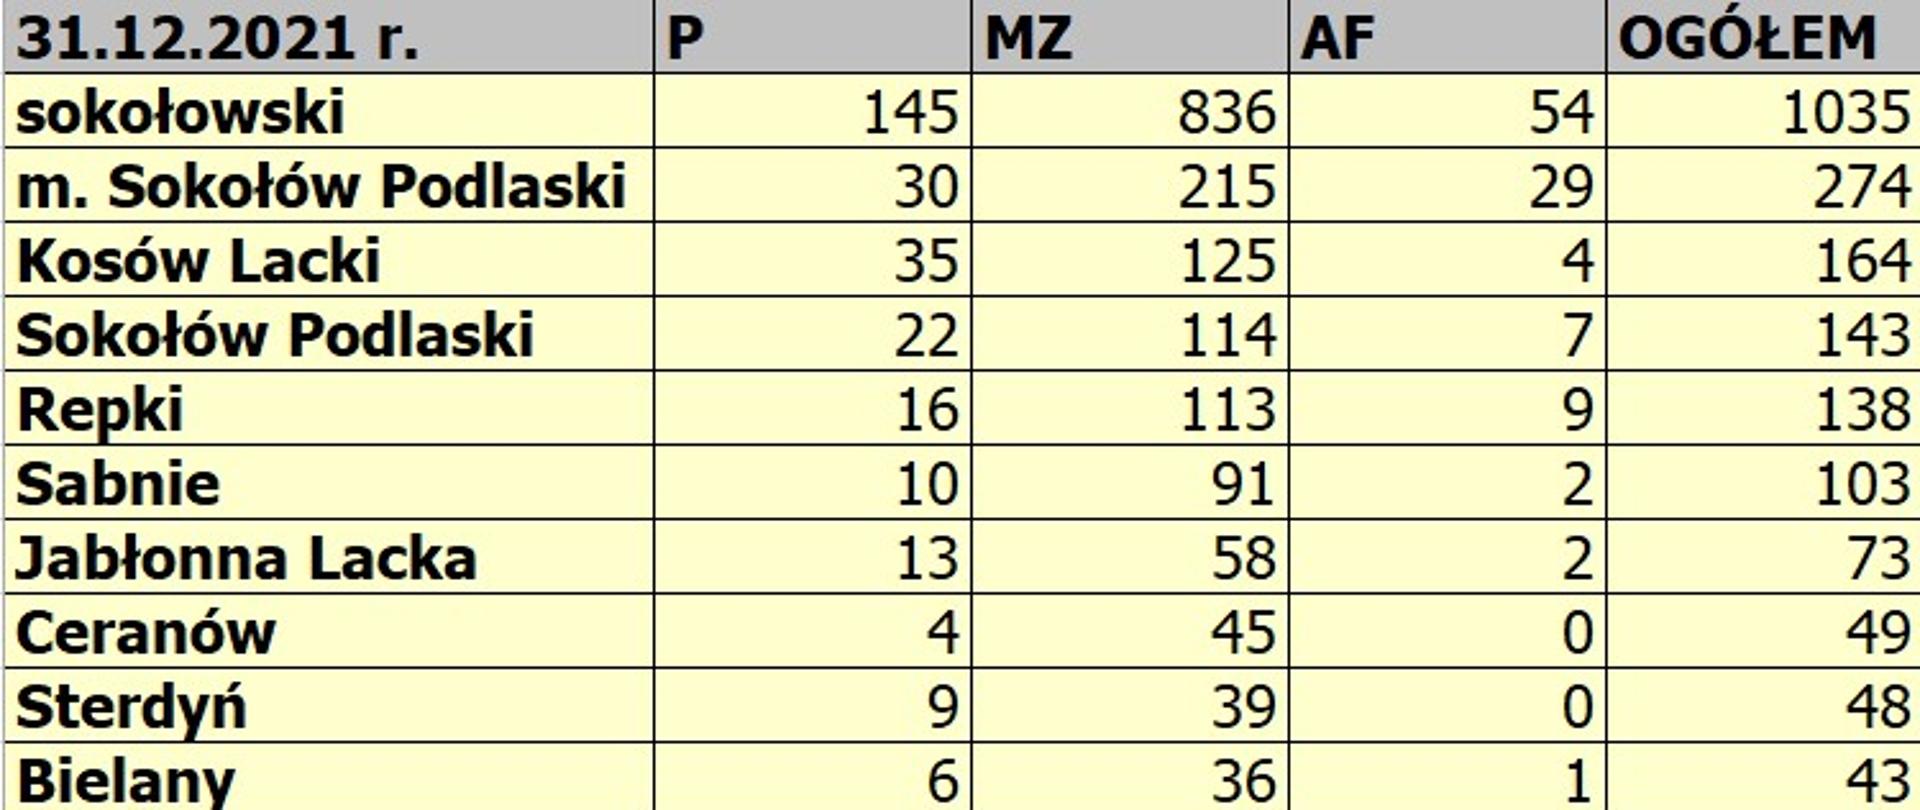 Zestawienie zdarzeń w rozbiciu na podział administracyjny oraz wyjazdów jednostek OSP w powiecie sokołowskim w 2021 roku w tabeli excel